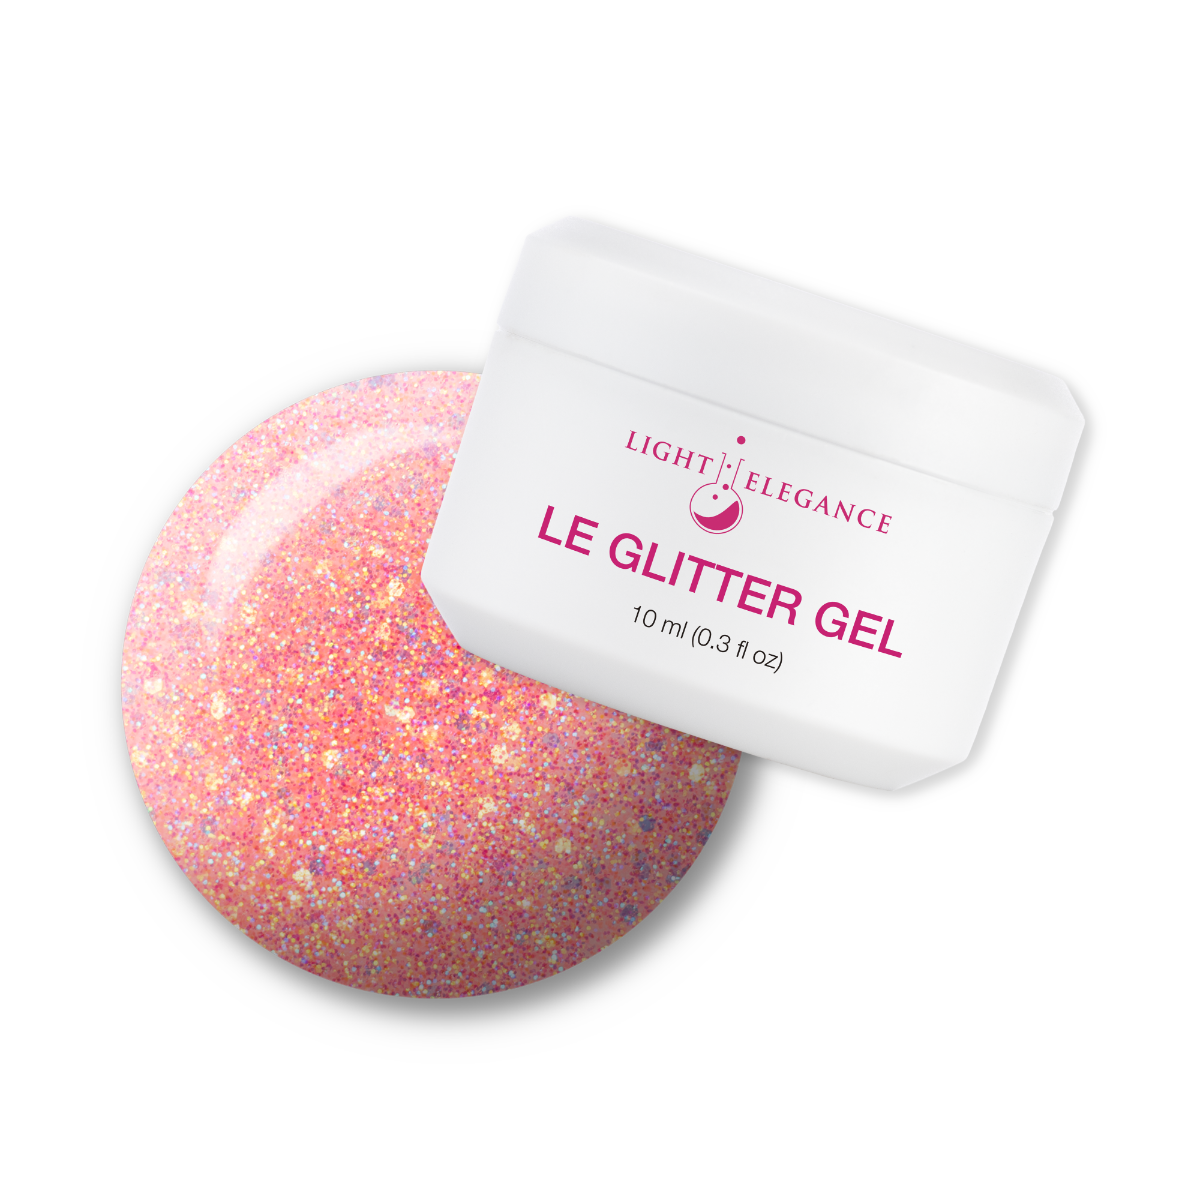 Light Elegance Glitter Gel - Mango Crush :: New Packaging